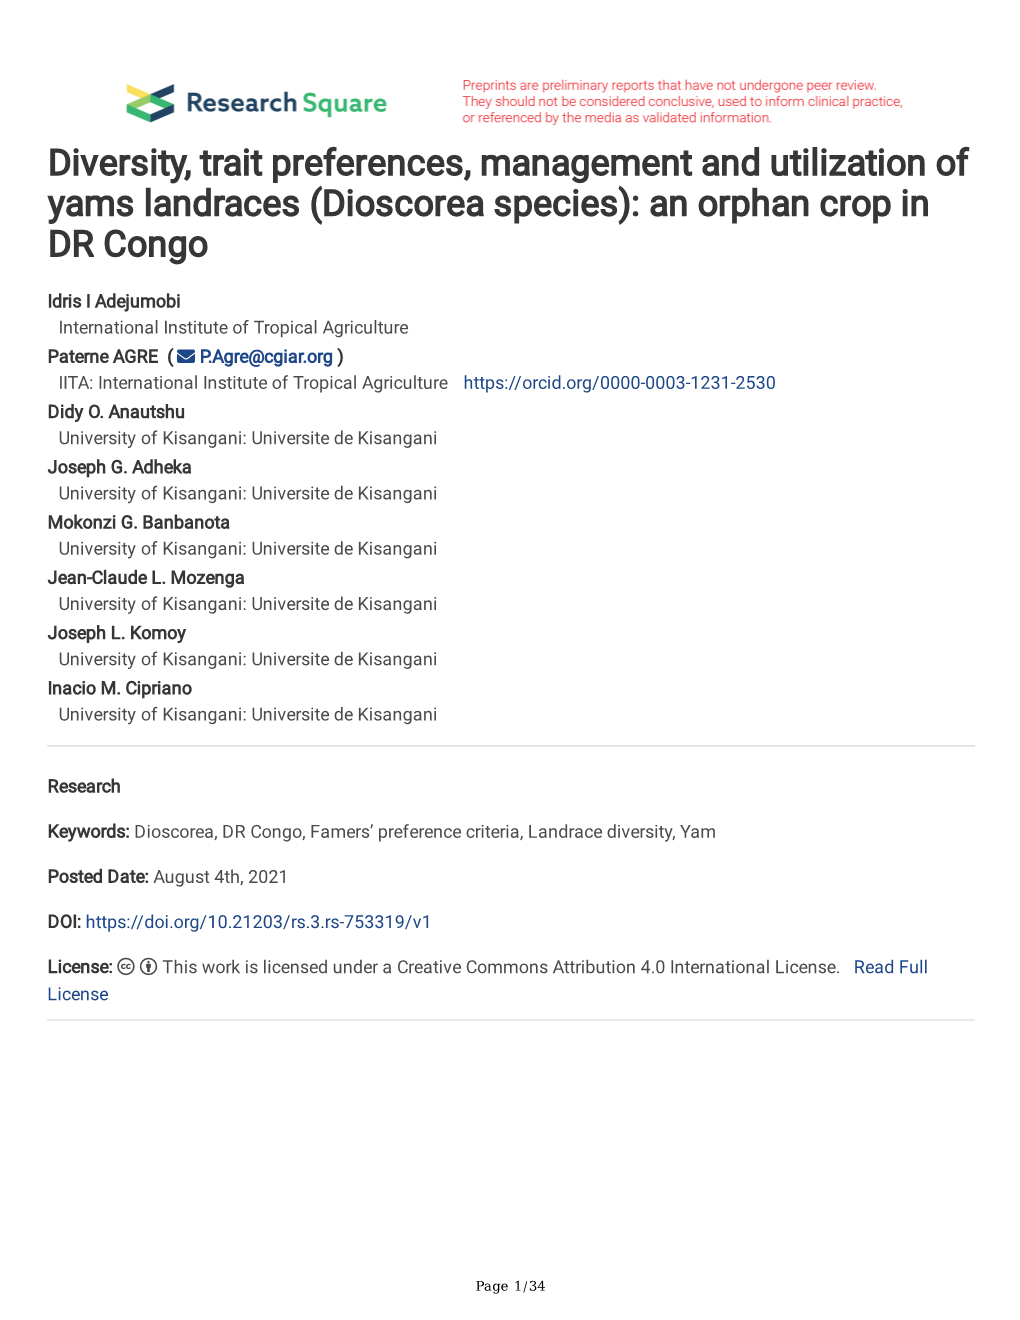 (Dioscorea Species): an Orphan Crop in DR Congo